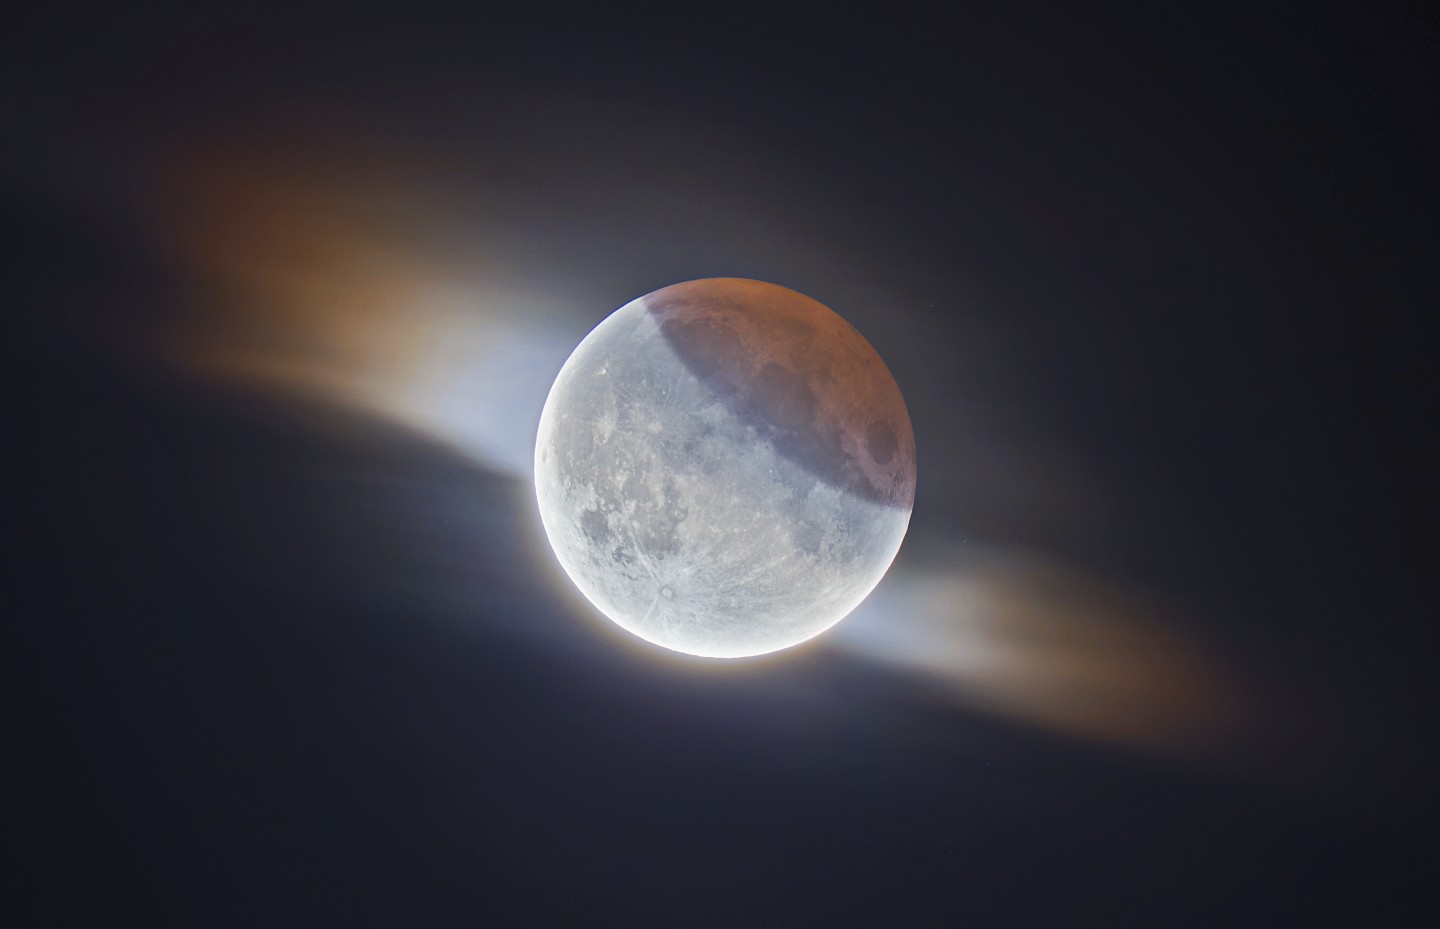 "Частичное лунное затмение с облаками". Во время частичного лунного затмения 2019 года фотографу удалось запечатлеть этот фантастический снимок Луны, когда перед ней пролетало небольшое облако. Фото: Ethan Roberts